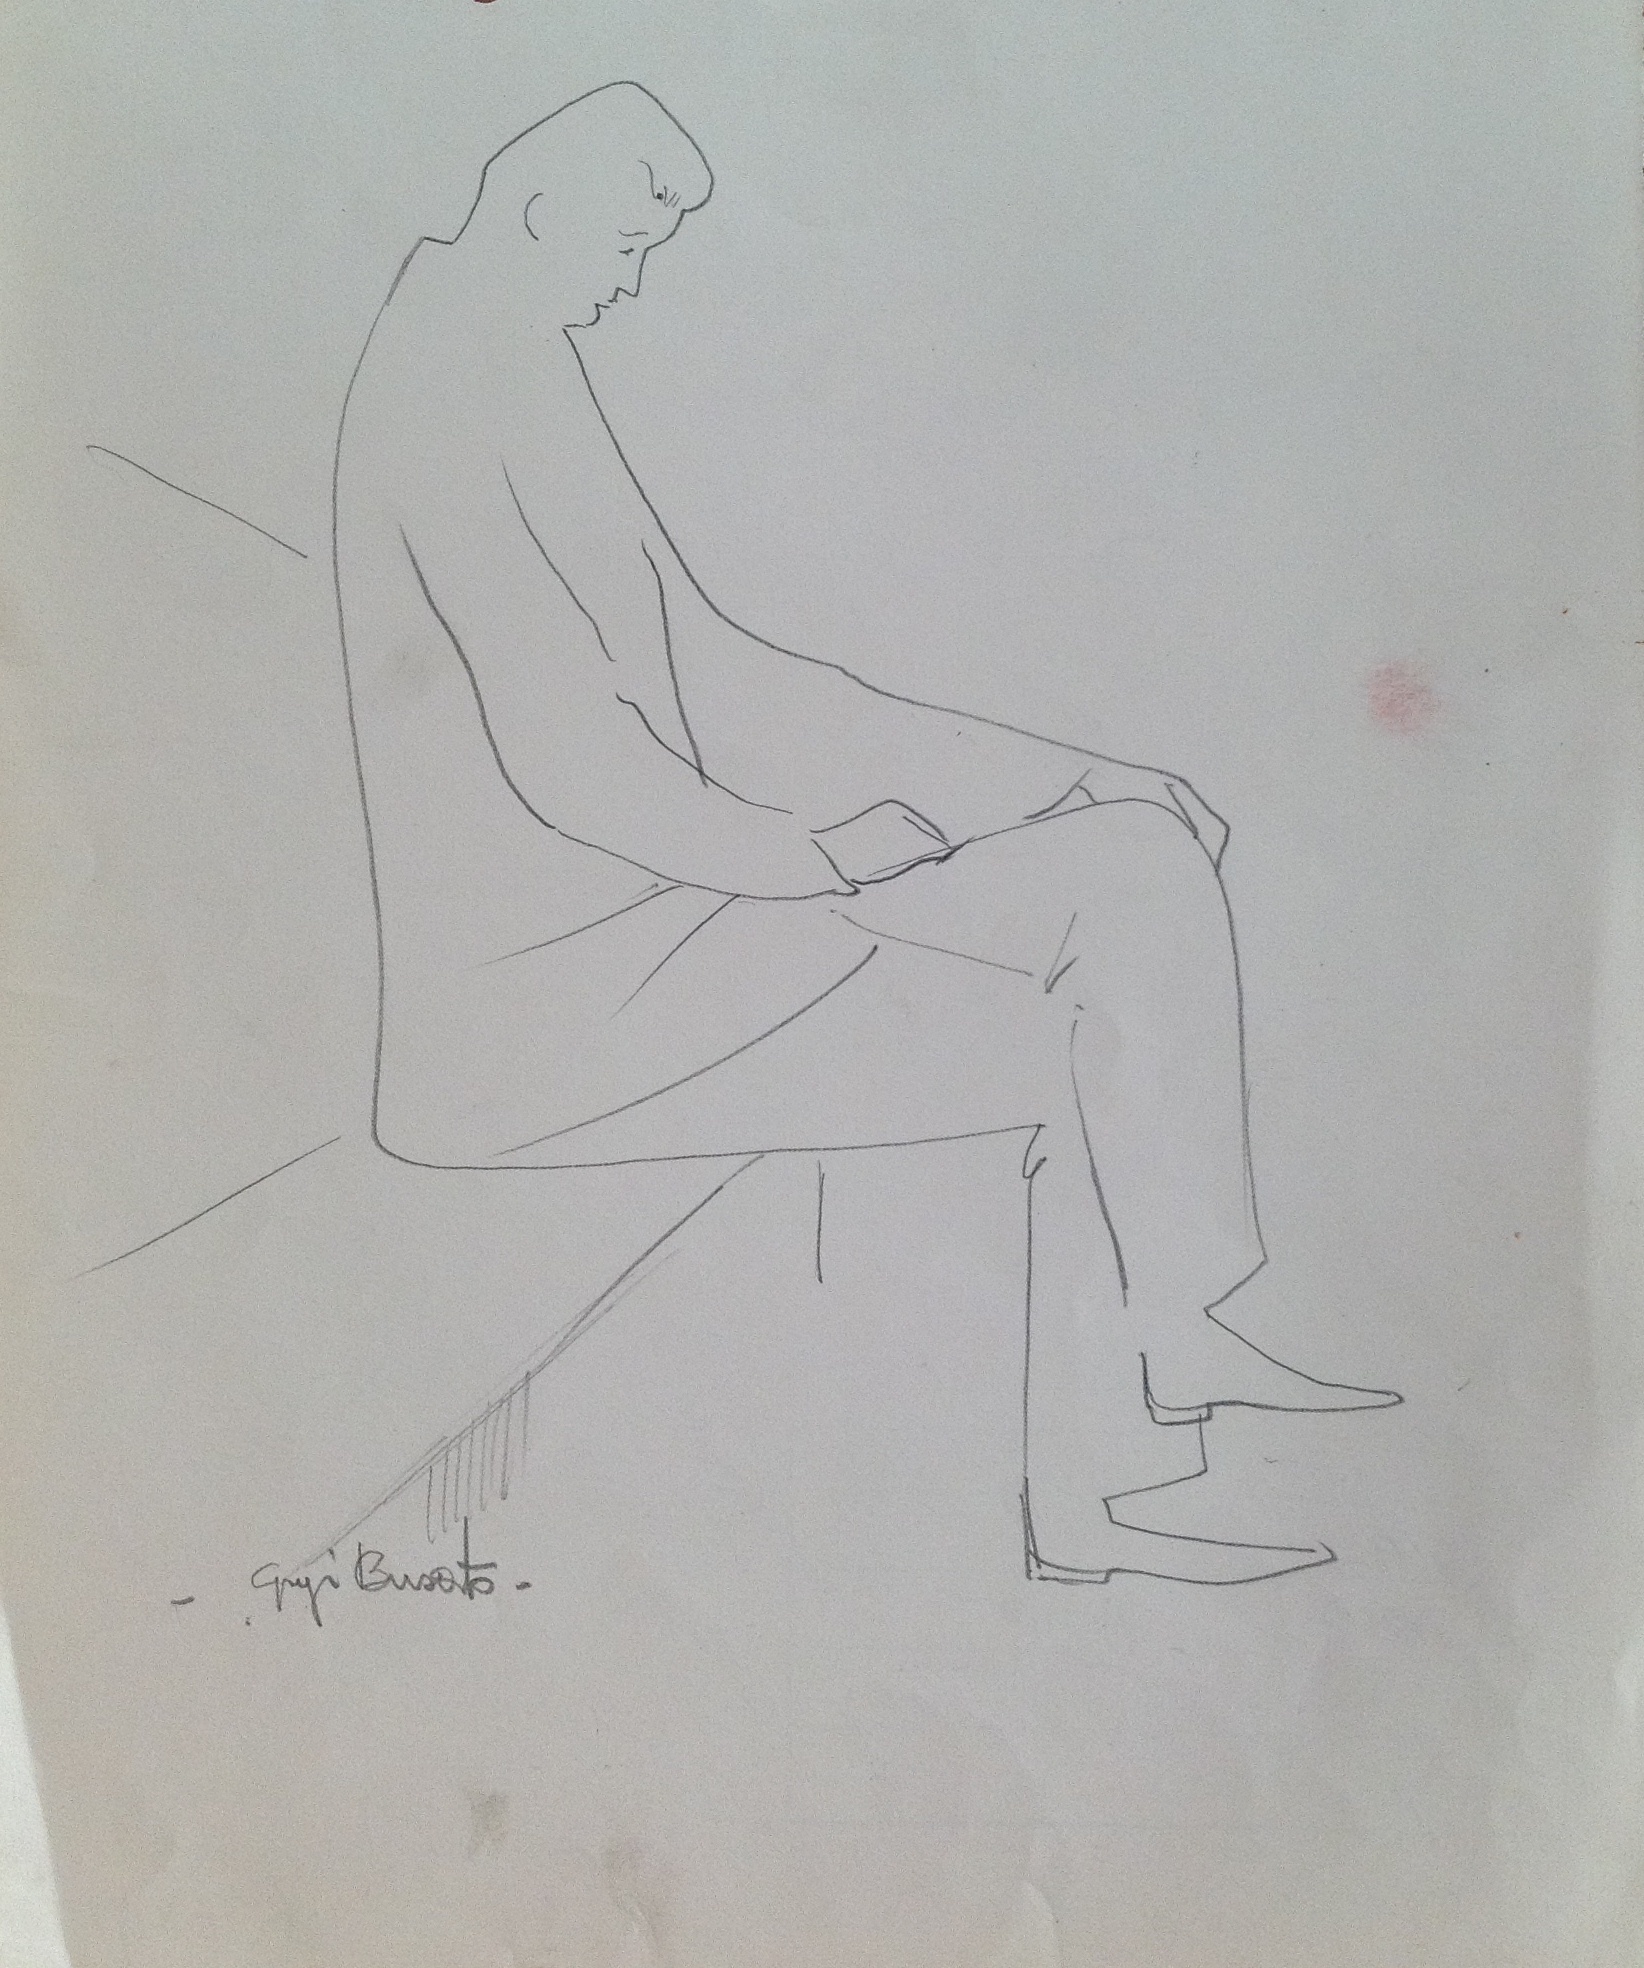 Sulla panca uomo seduto da solo di Gigi Busato disegno a matita su carta bianco e nero collezione di famiglia